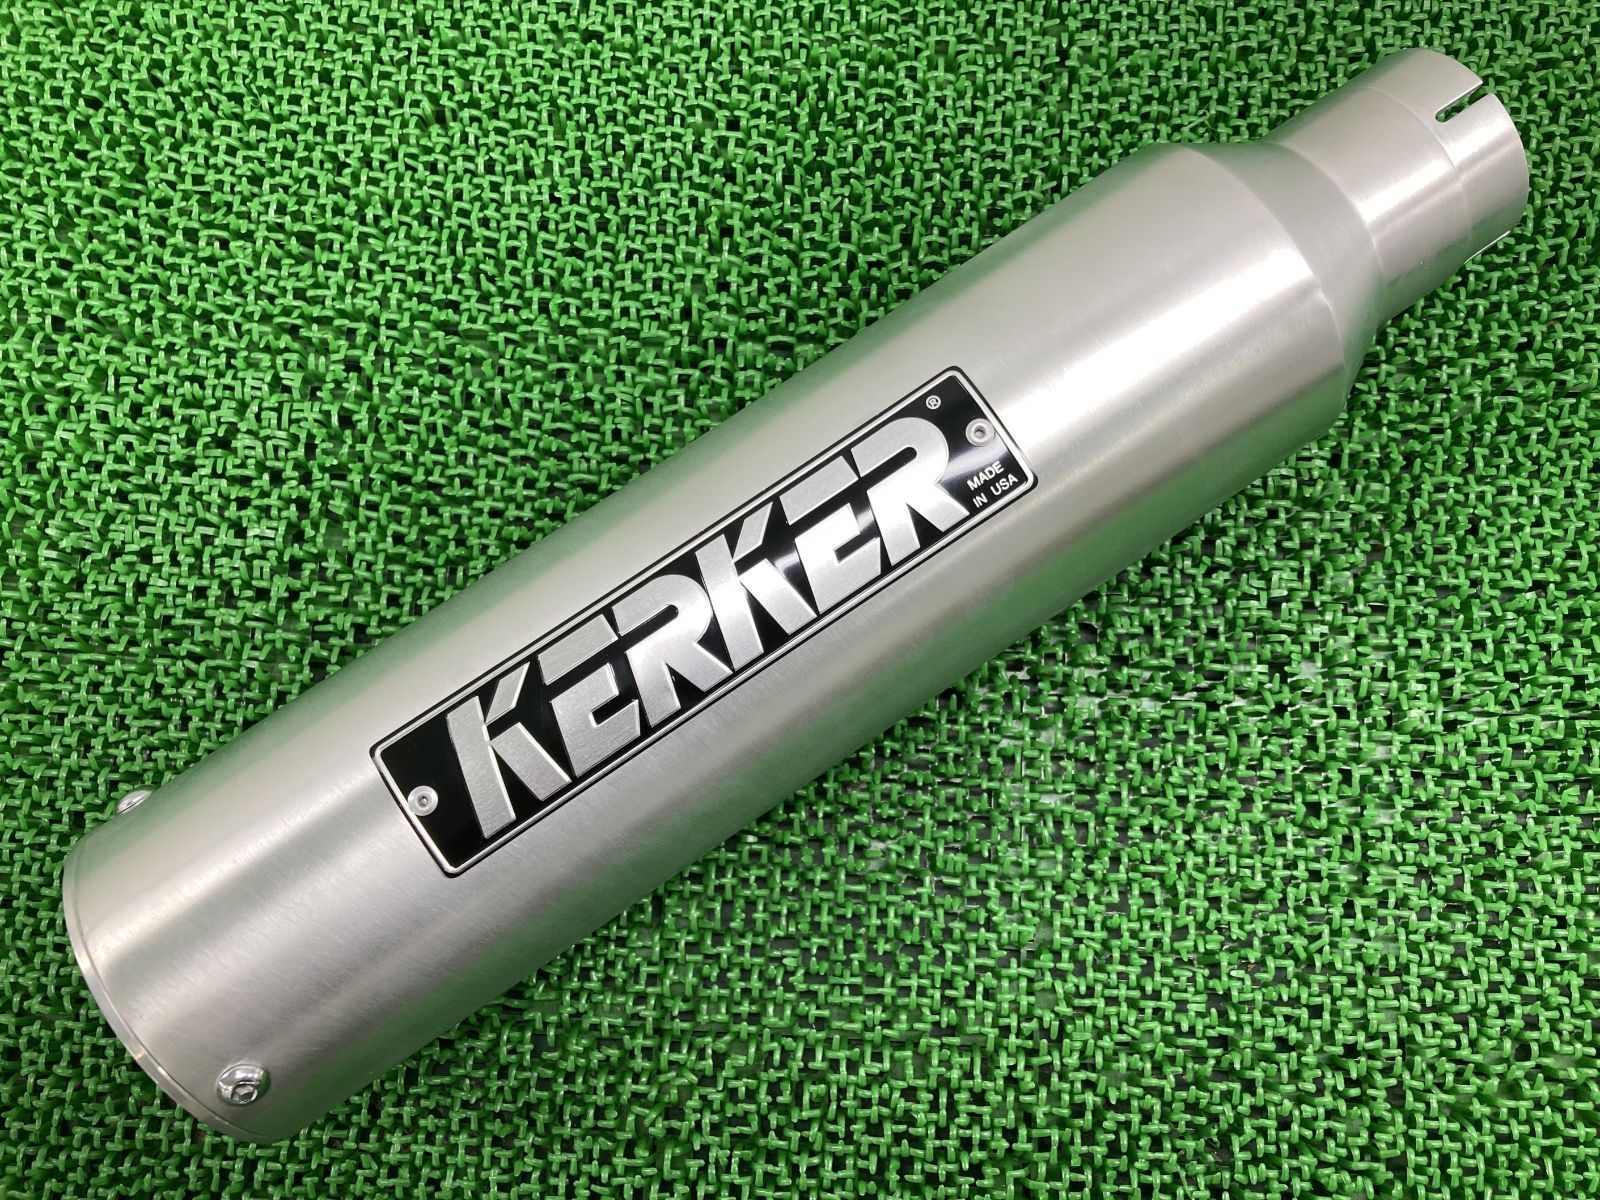 激安な KERKER製GPZ900R サイレンサーマフラー 右 在庫有 即納 社外 新品 バイク 部品 ZX900A 差込径2インチ用 アルミ  Kシステム 未使用 品薄 58104.54円 オートバイパーツ